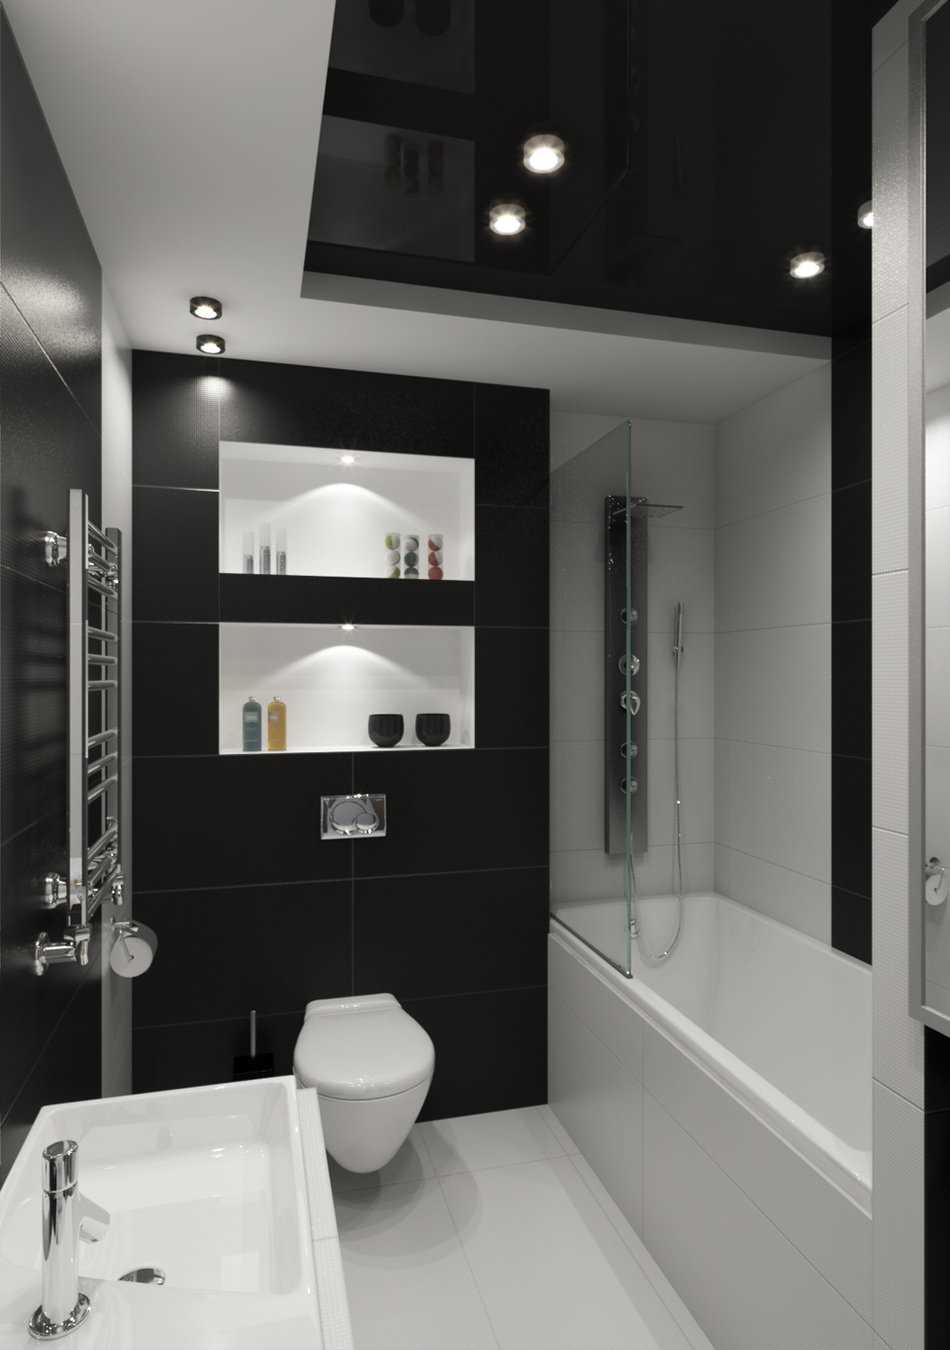 varijanta svijetlog dizajna kupaonice u crno-bijeloj boji